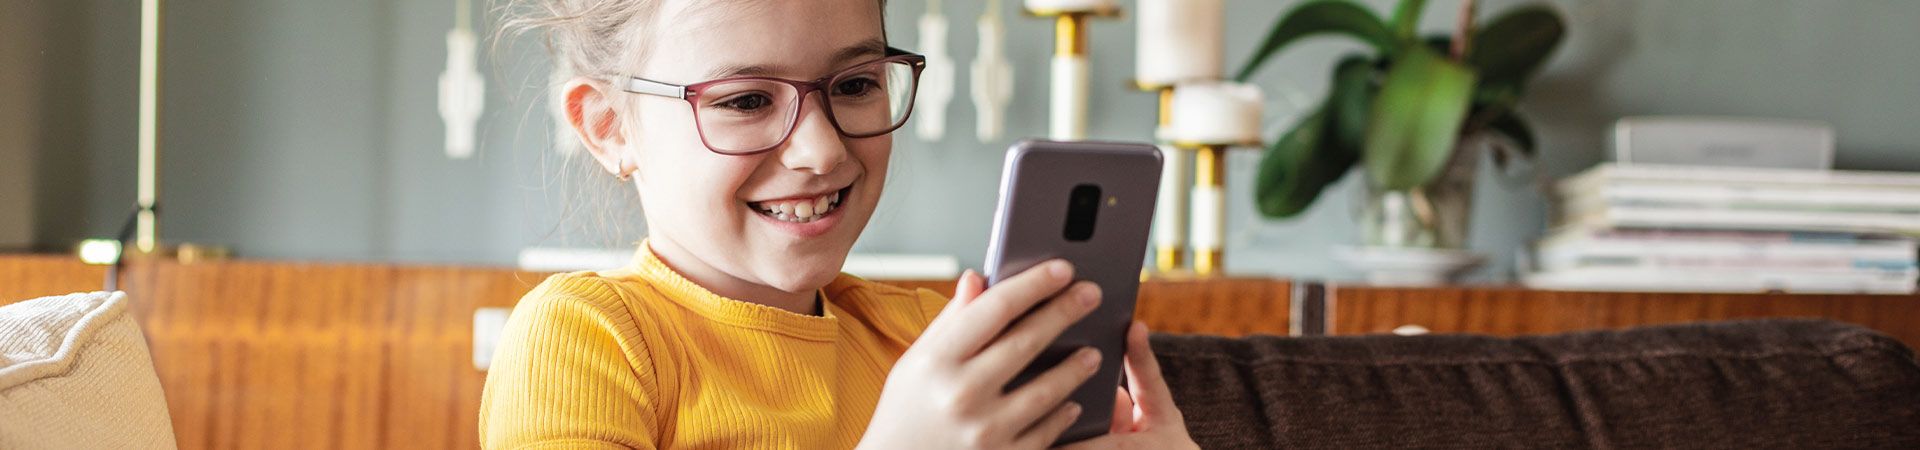 Mobiele telefoon voor kinderen - Klein meisje gebruikt haar eigen smartphone.